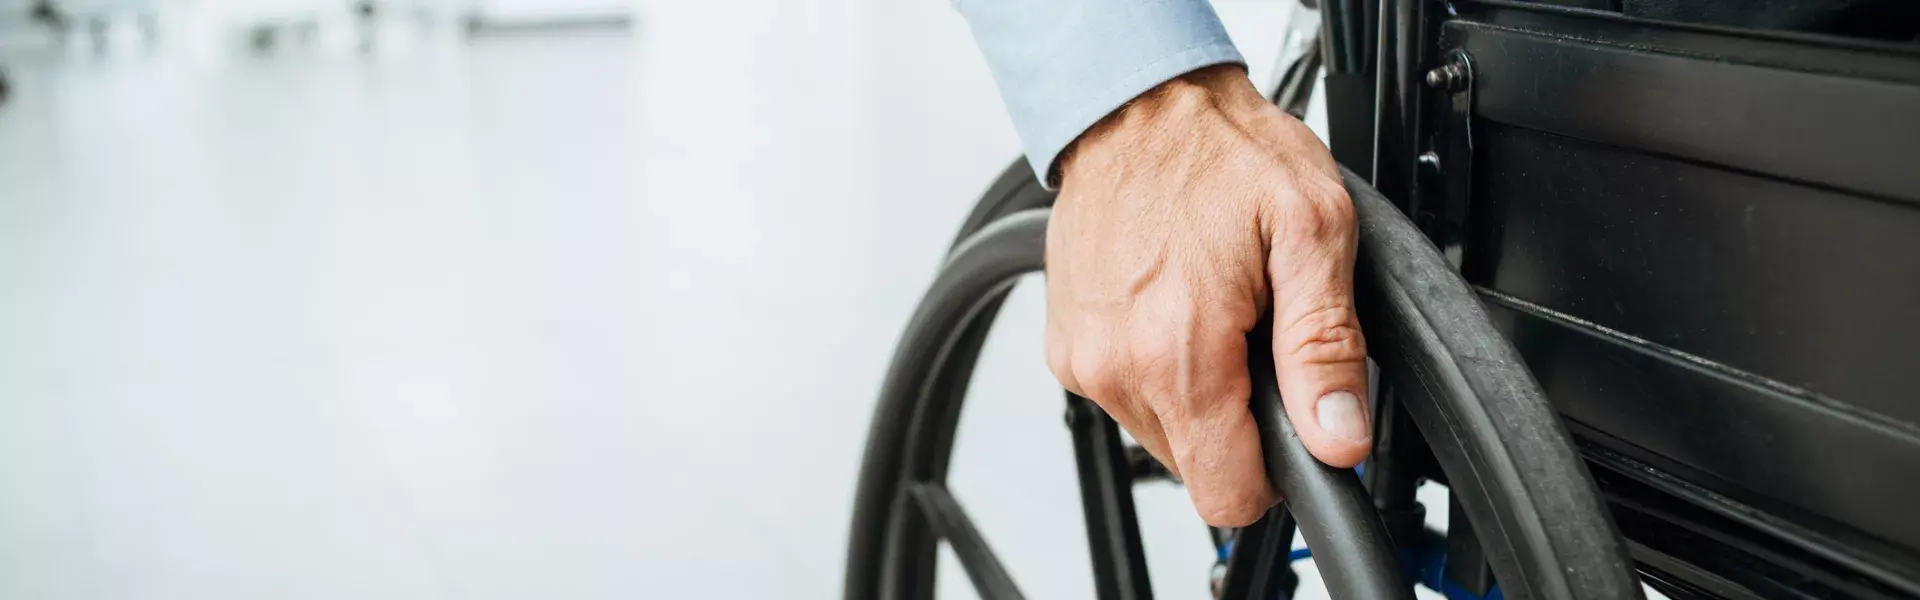 człowiek na wózku inwalidzkim